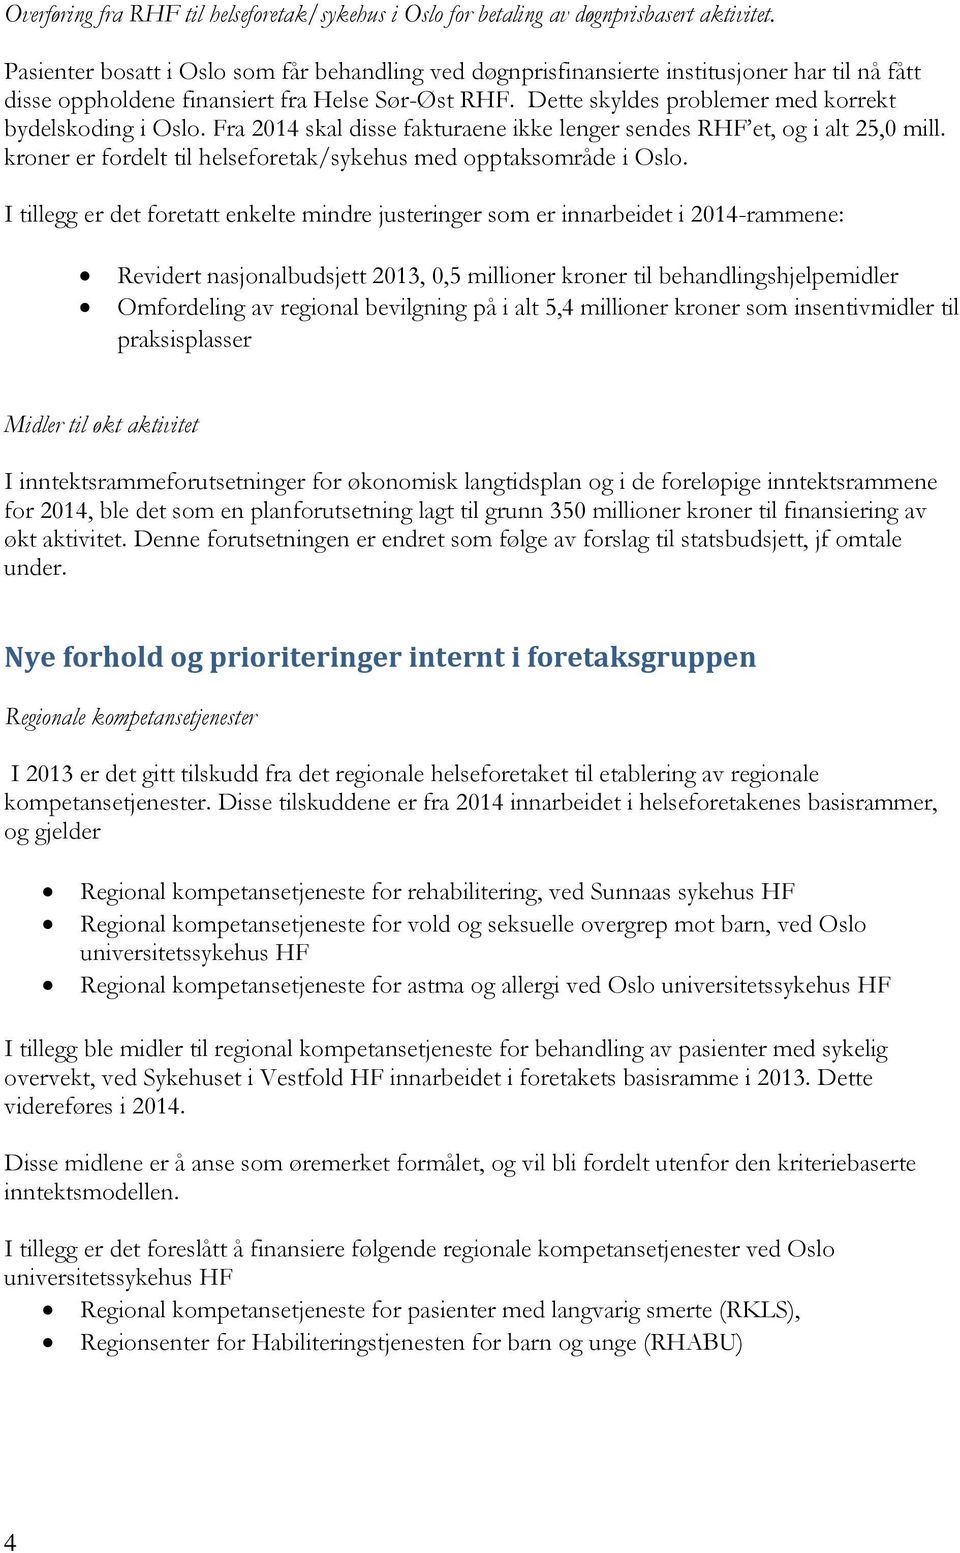 Dette skyldes problemer med korrekt bydelskoding i Oslo. Fra 2014 skal disse fakturaene ikke lenger sendes RHF et, og i alt 25,0 mill.